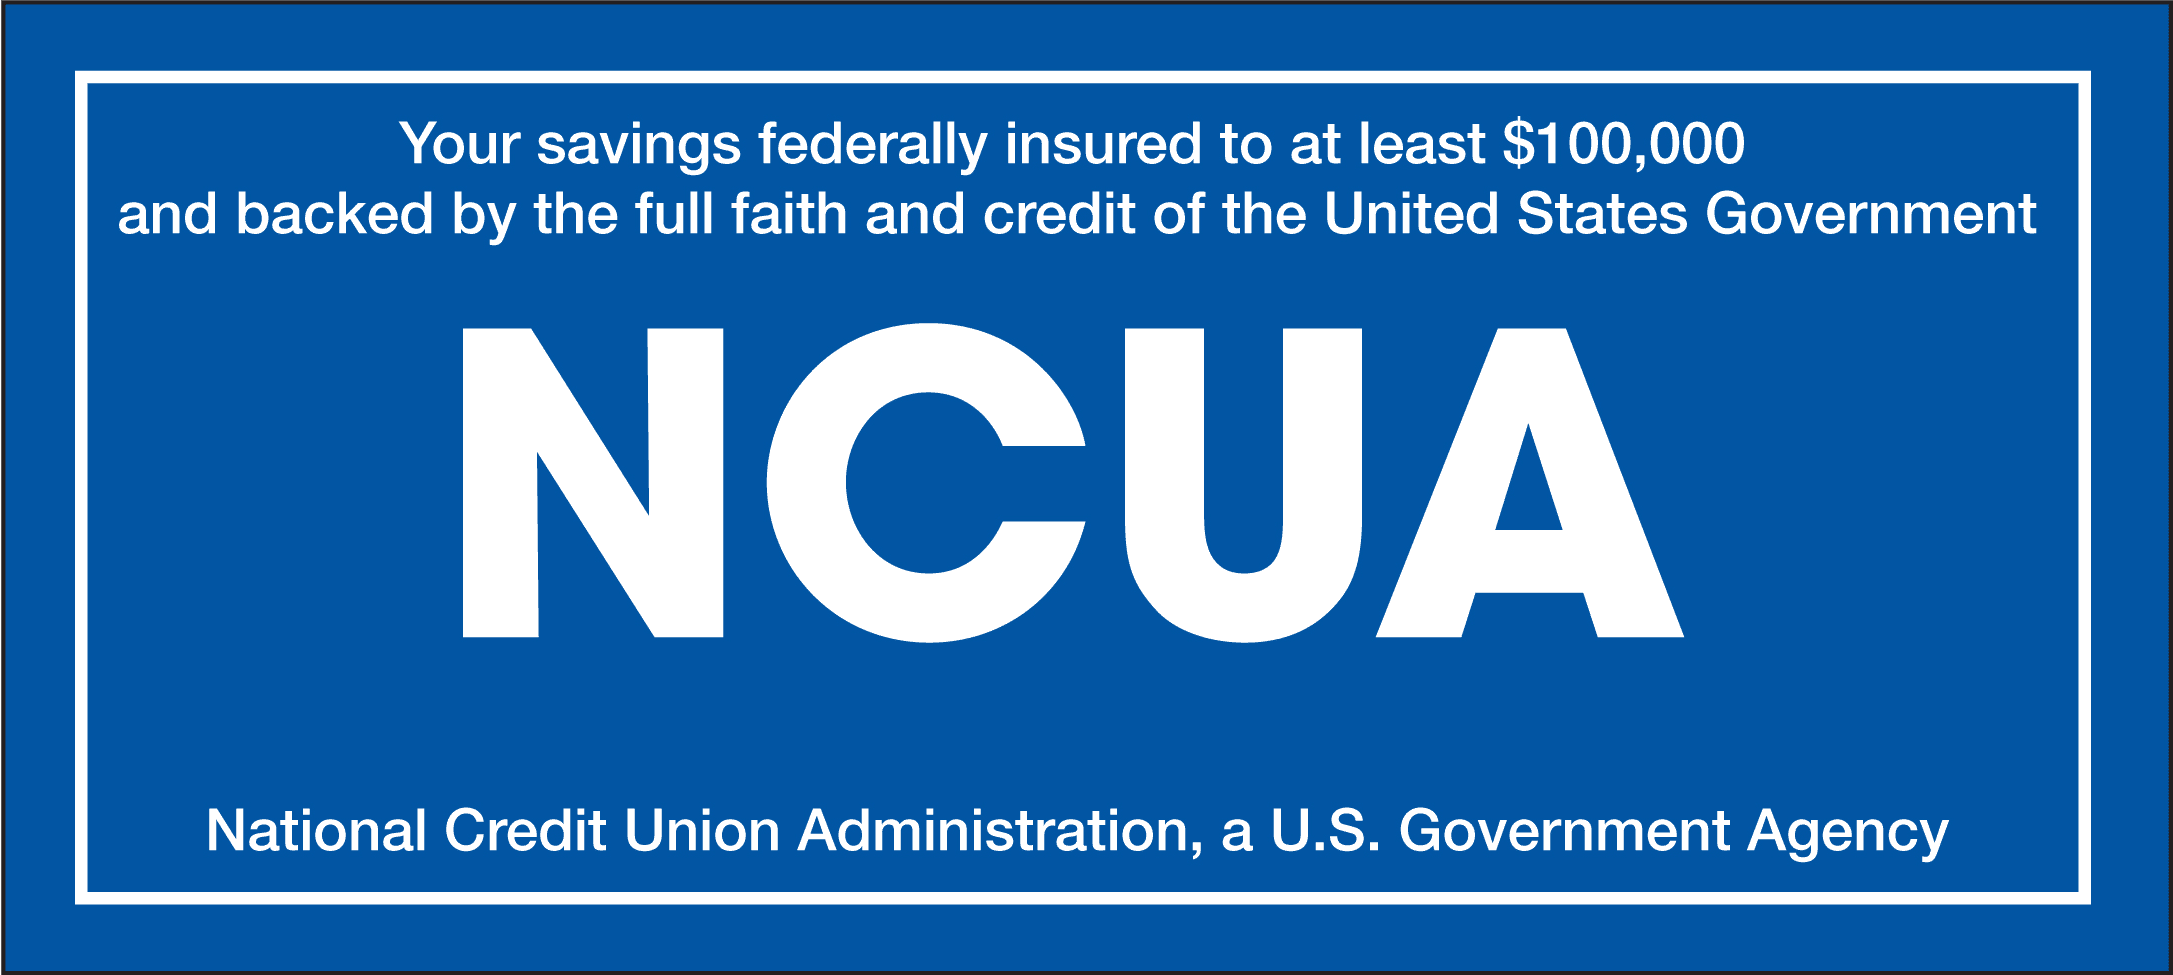 NCUA Savings Insured to at least $100,000